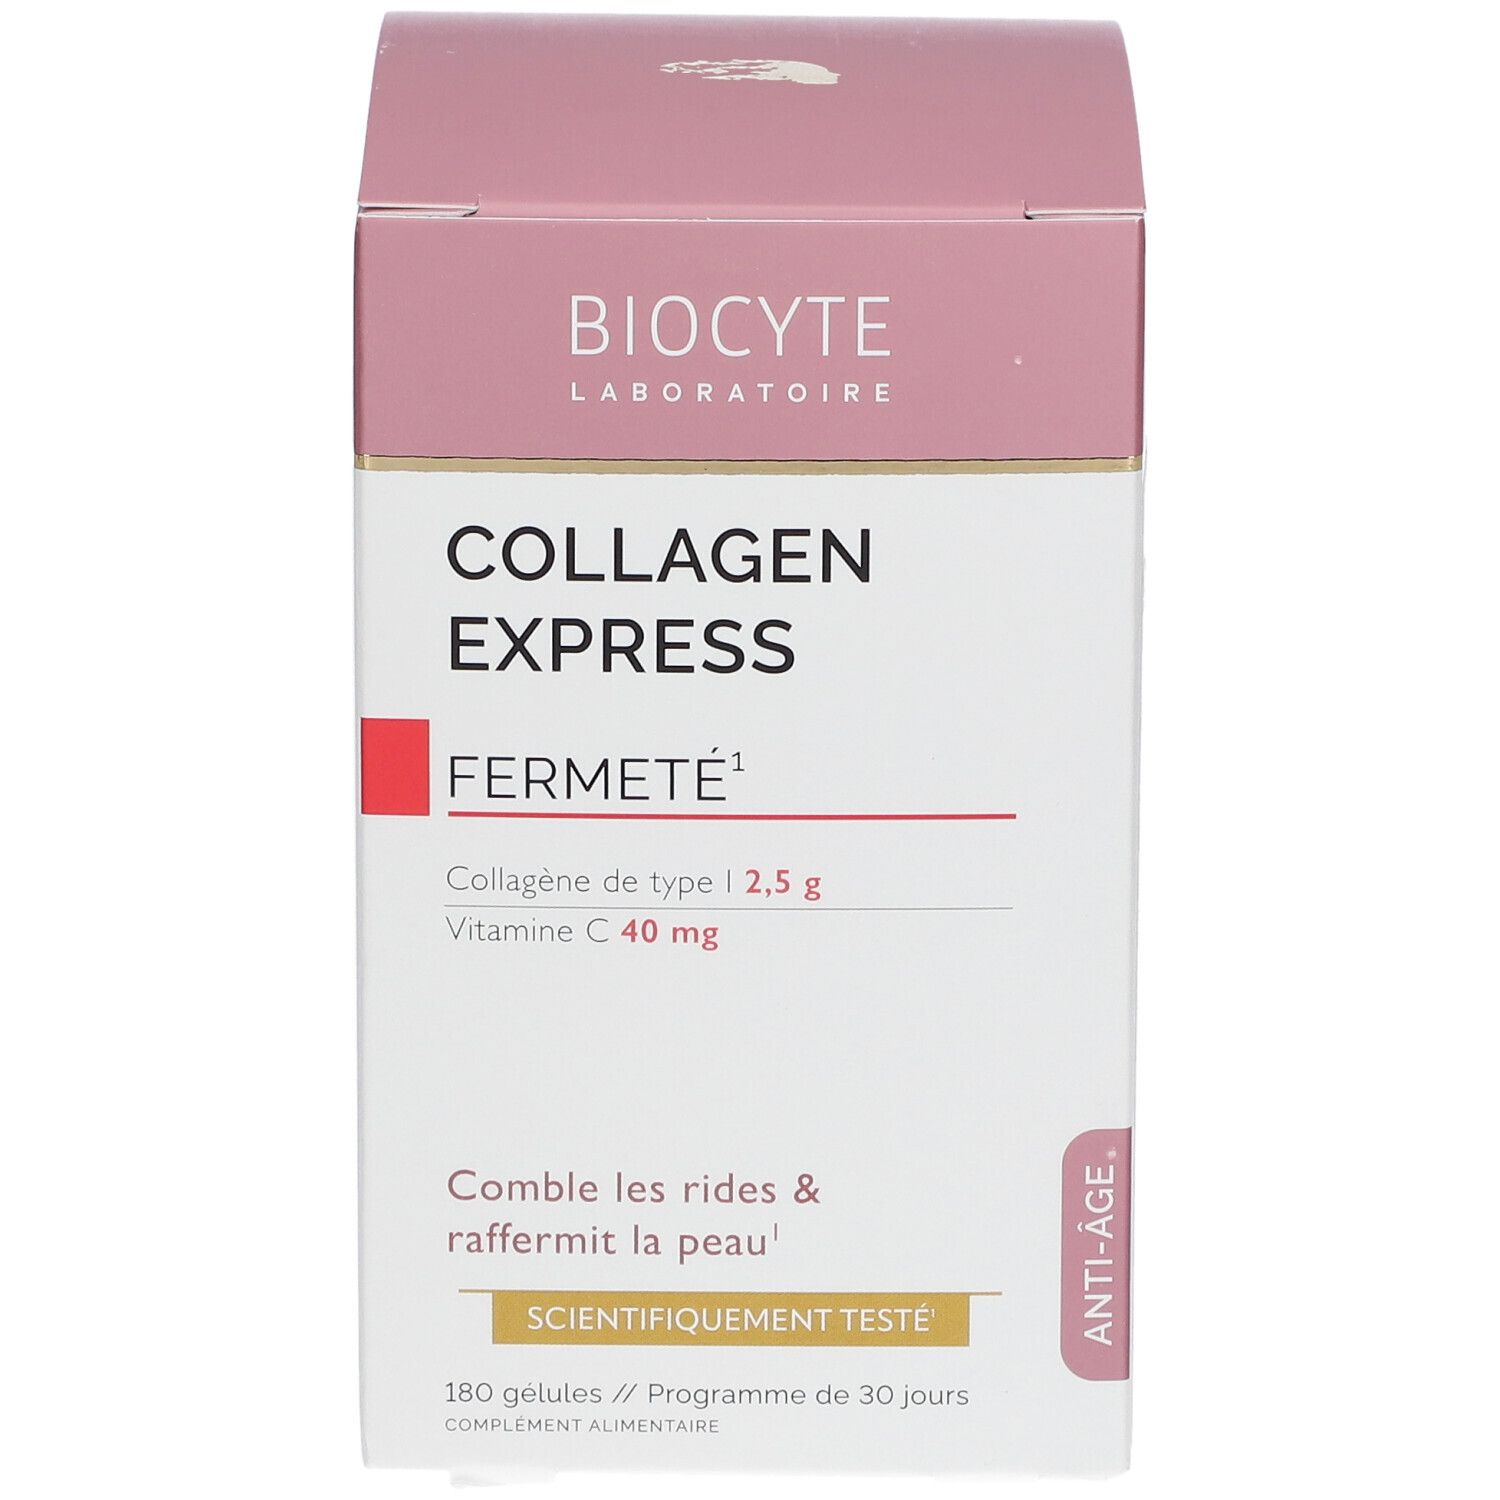 BIOCYTE Collagen Express Anti-Age